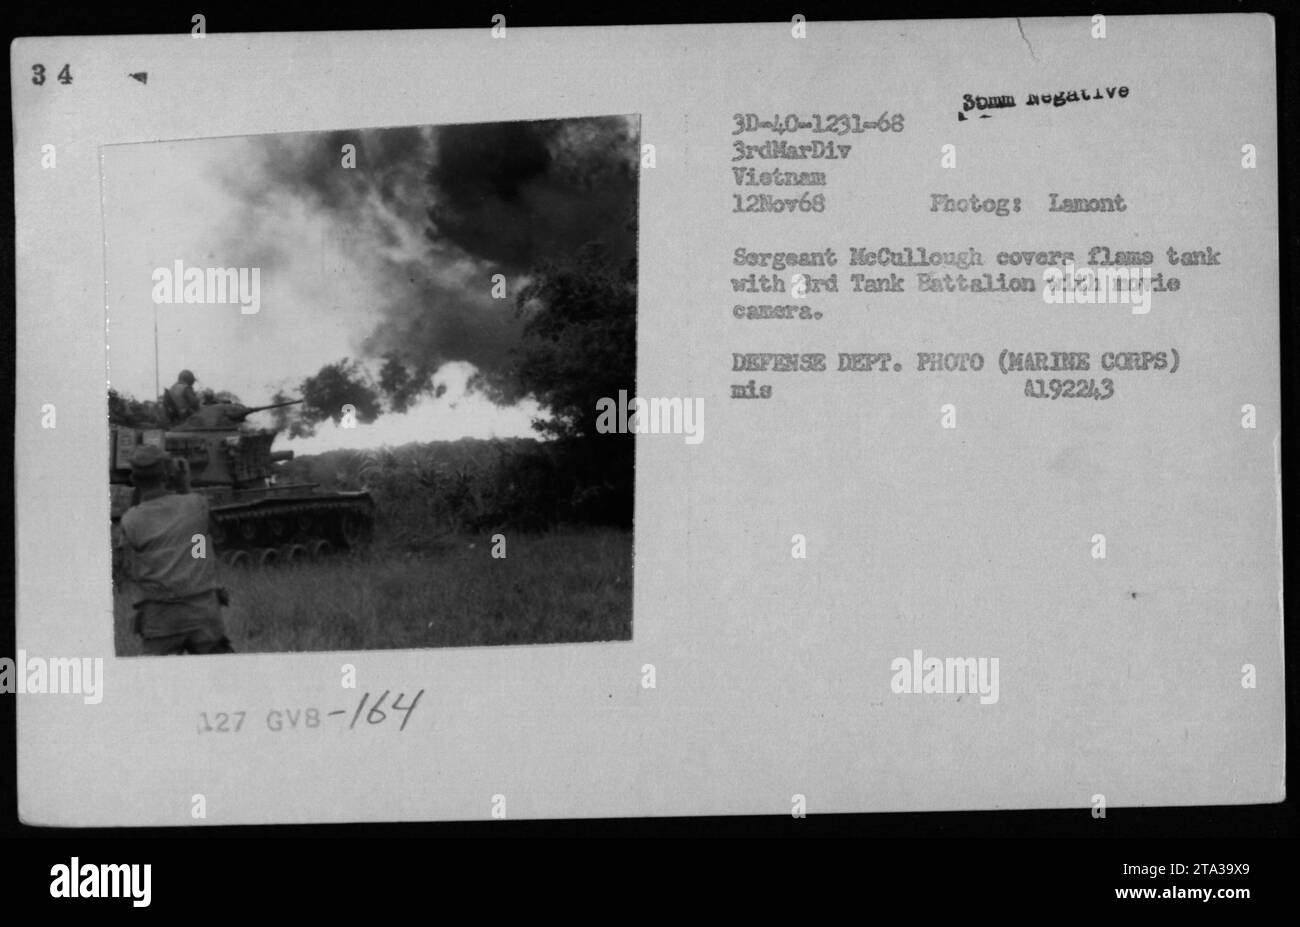 Marine Corps Sergeant McCullough deckt einen Flammentank mit einer Filmkamera während der Militäroperationen in Vietnam am 12. November 1968 ab. Dieses Foto wurde vom Kampffotografen Larry Burrows für Time/Life aufgenommen. McCullough war Mitglied der 3. Marine Division. Das Bild zeigt das Panzerbataillon in Aktion. Stockfoto